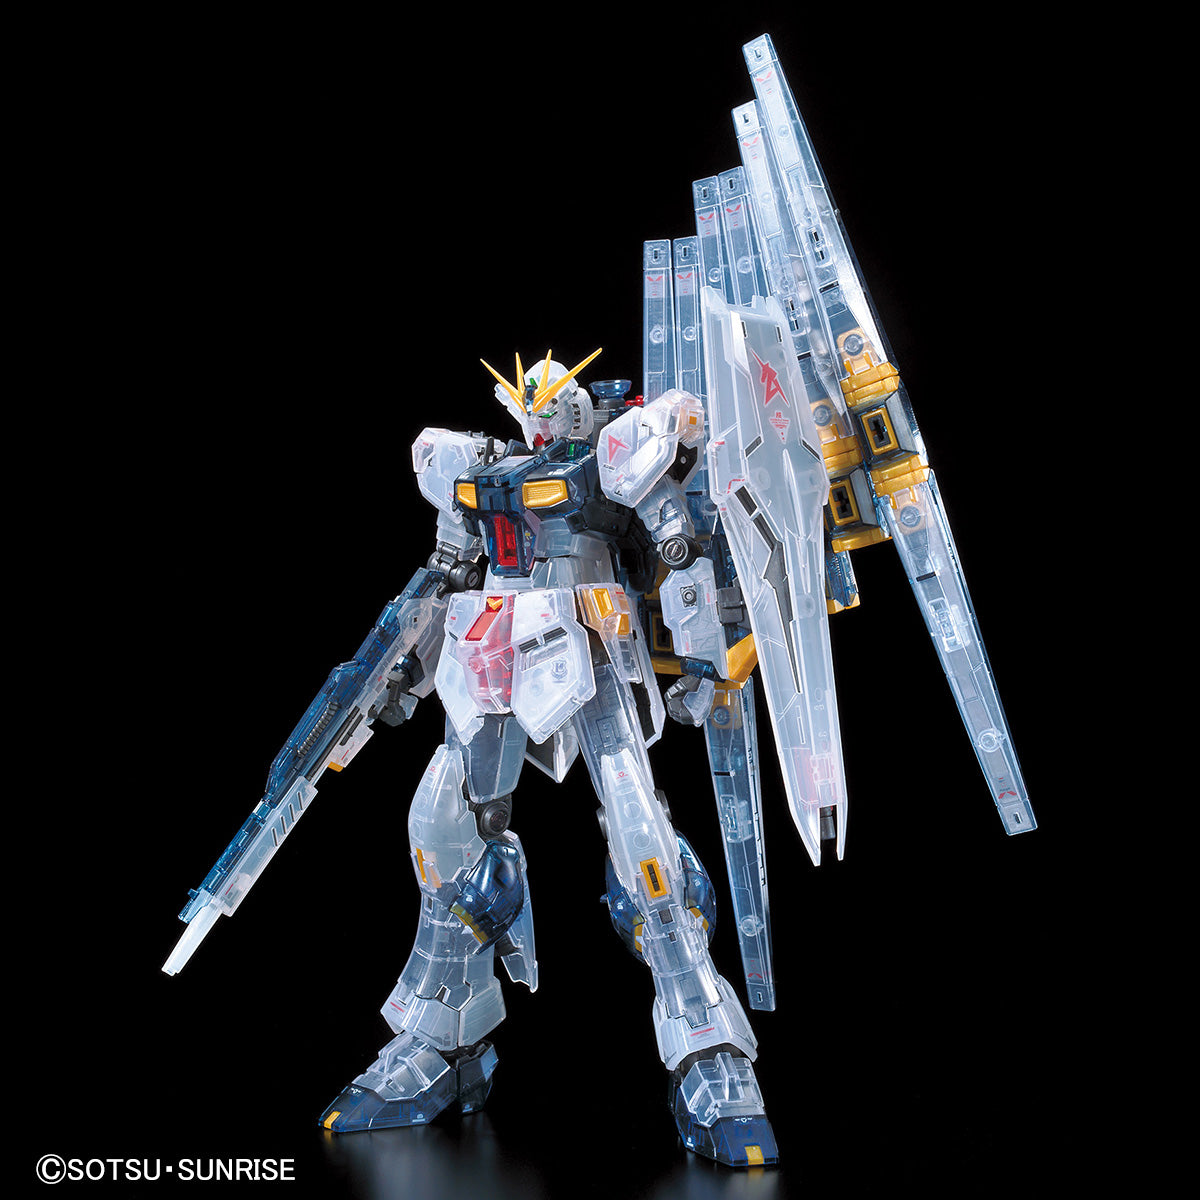 Gundam Base Limited RG RX-93 Nu Gundam [Clear Color]